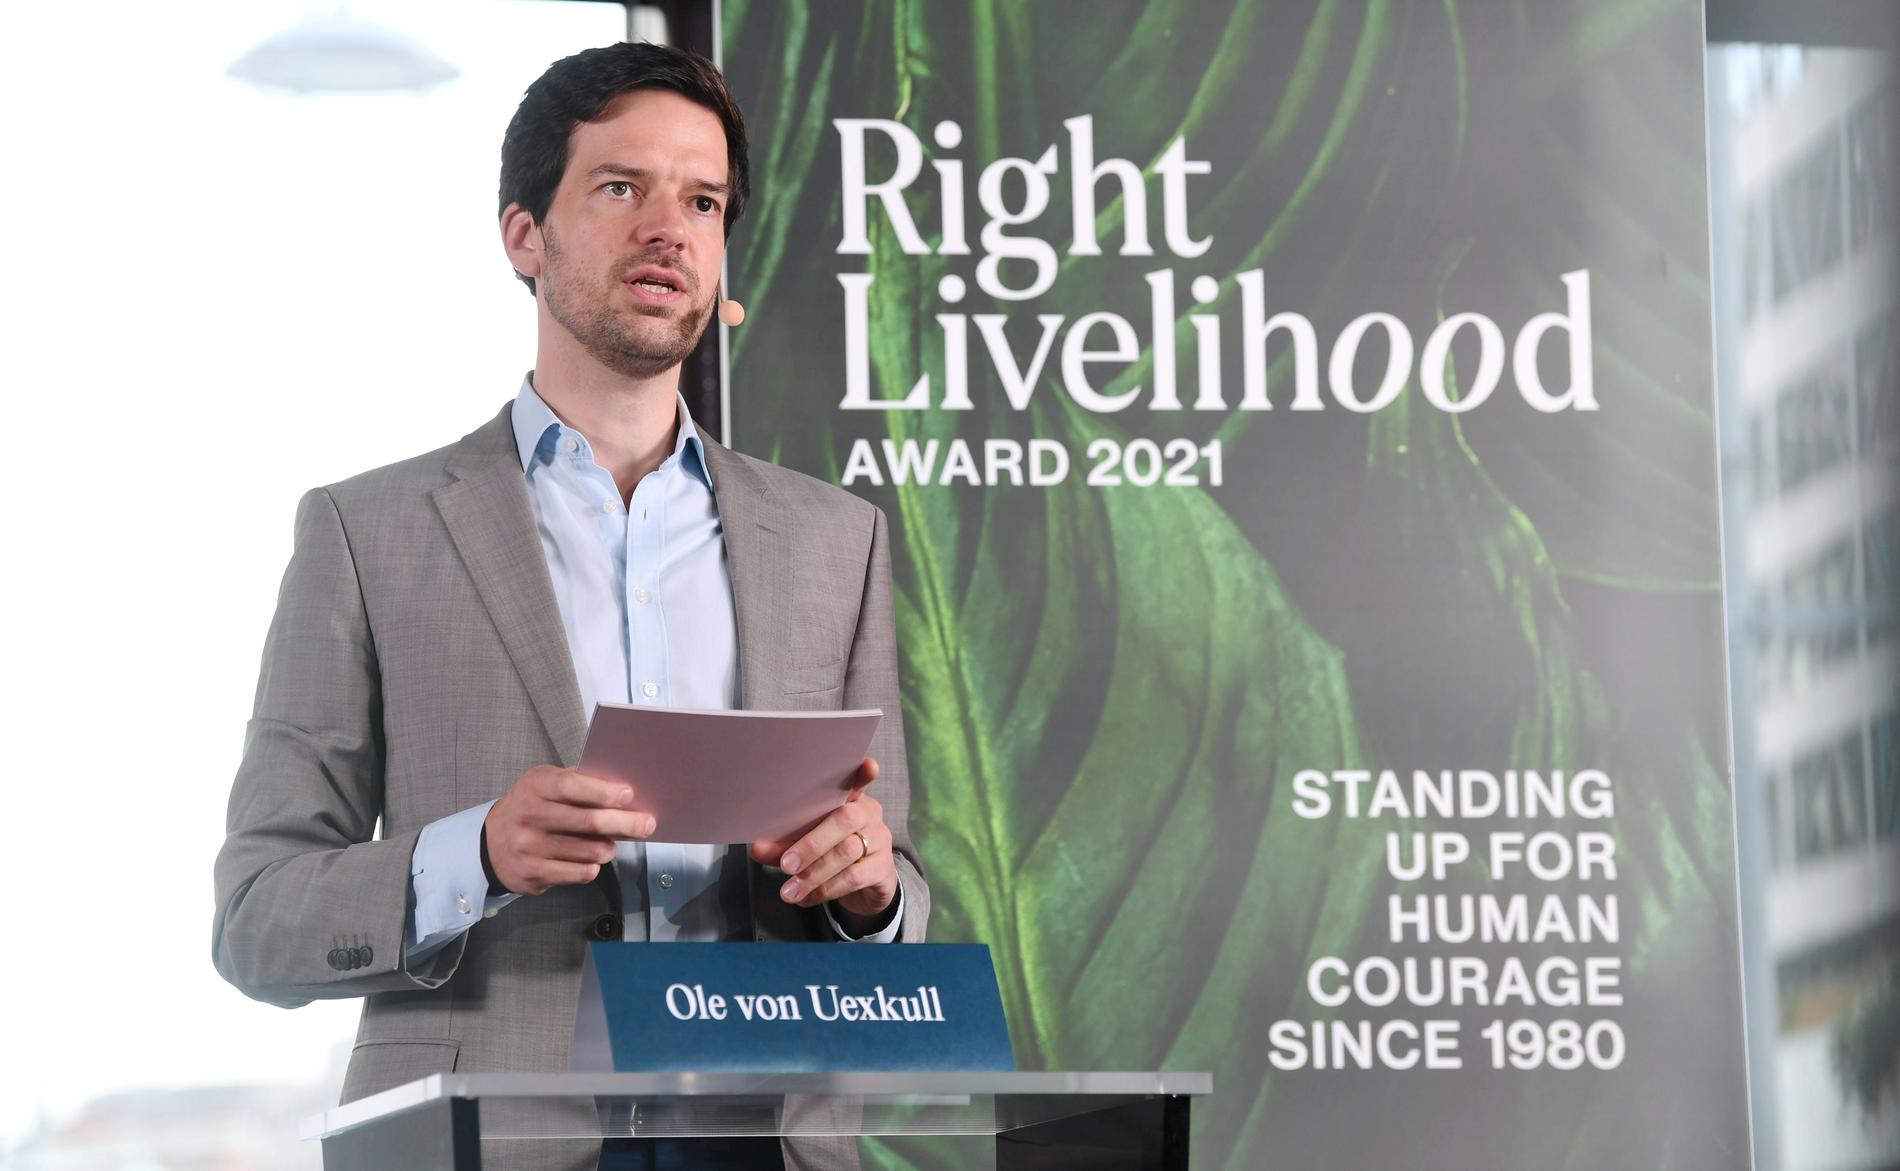 Ole von Uexkull, juryledamot och vd för Right Livelihood presenterar årets pristagare.